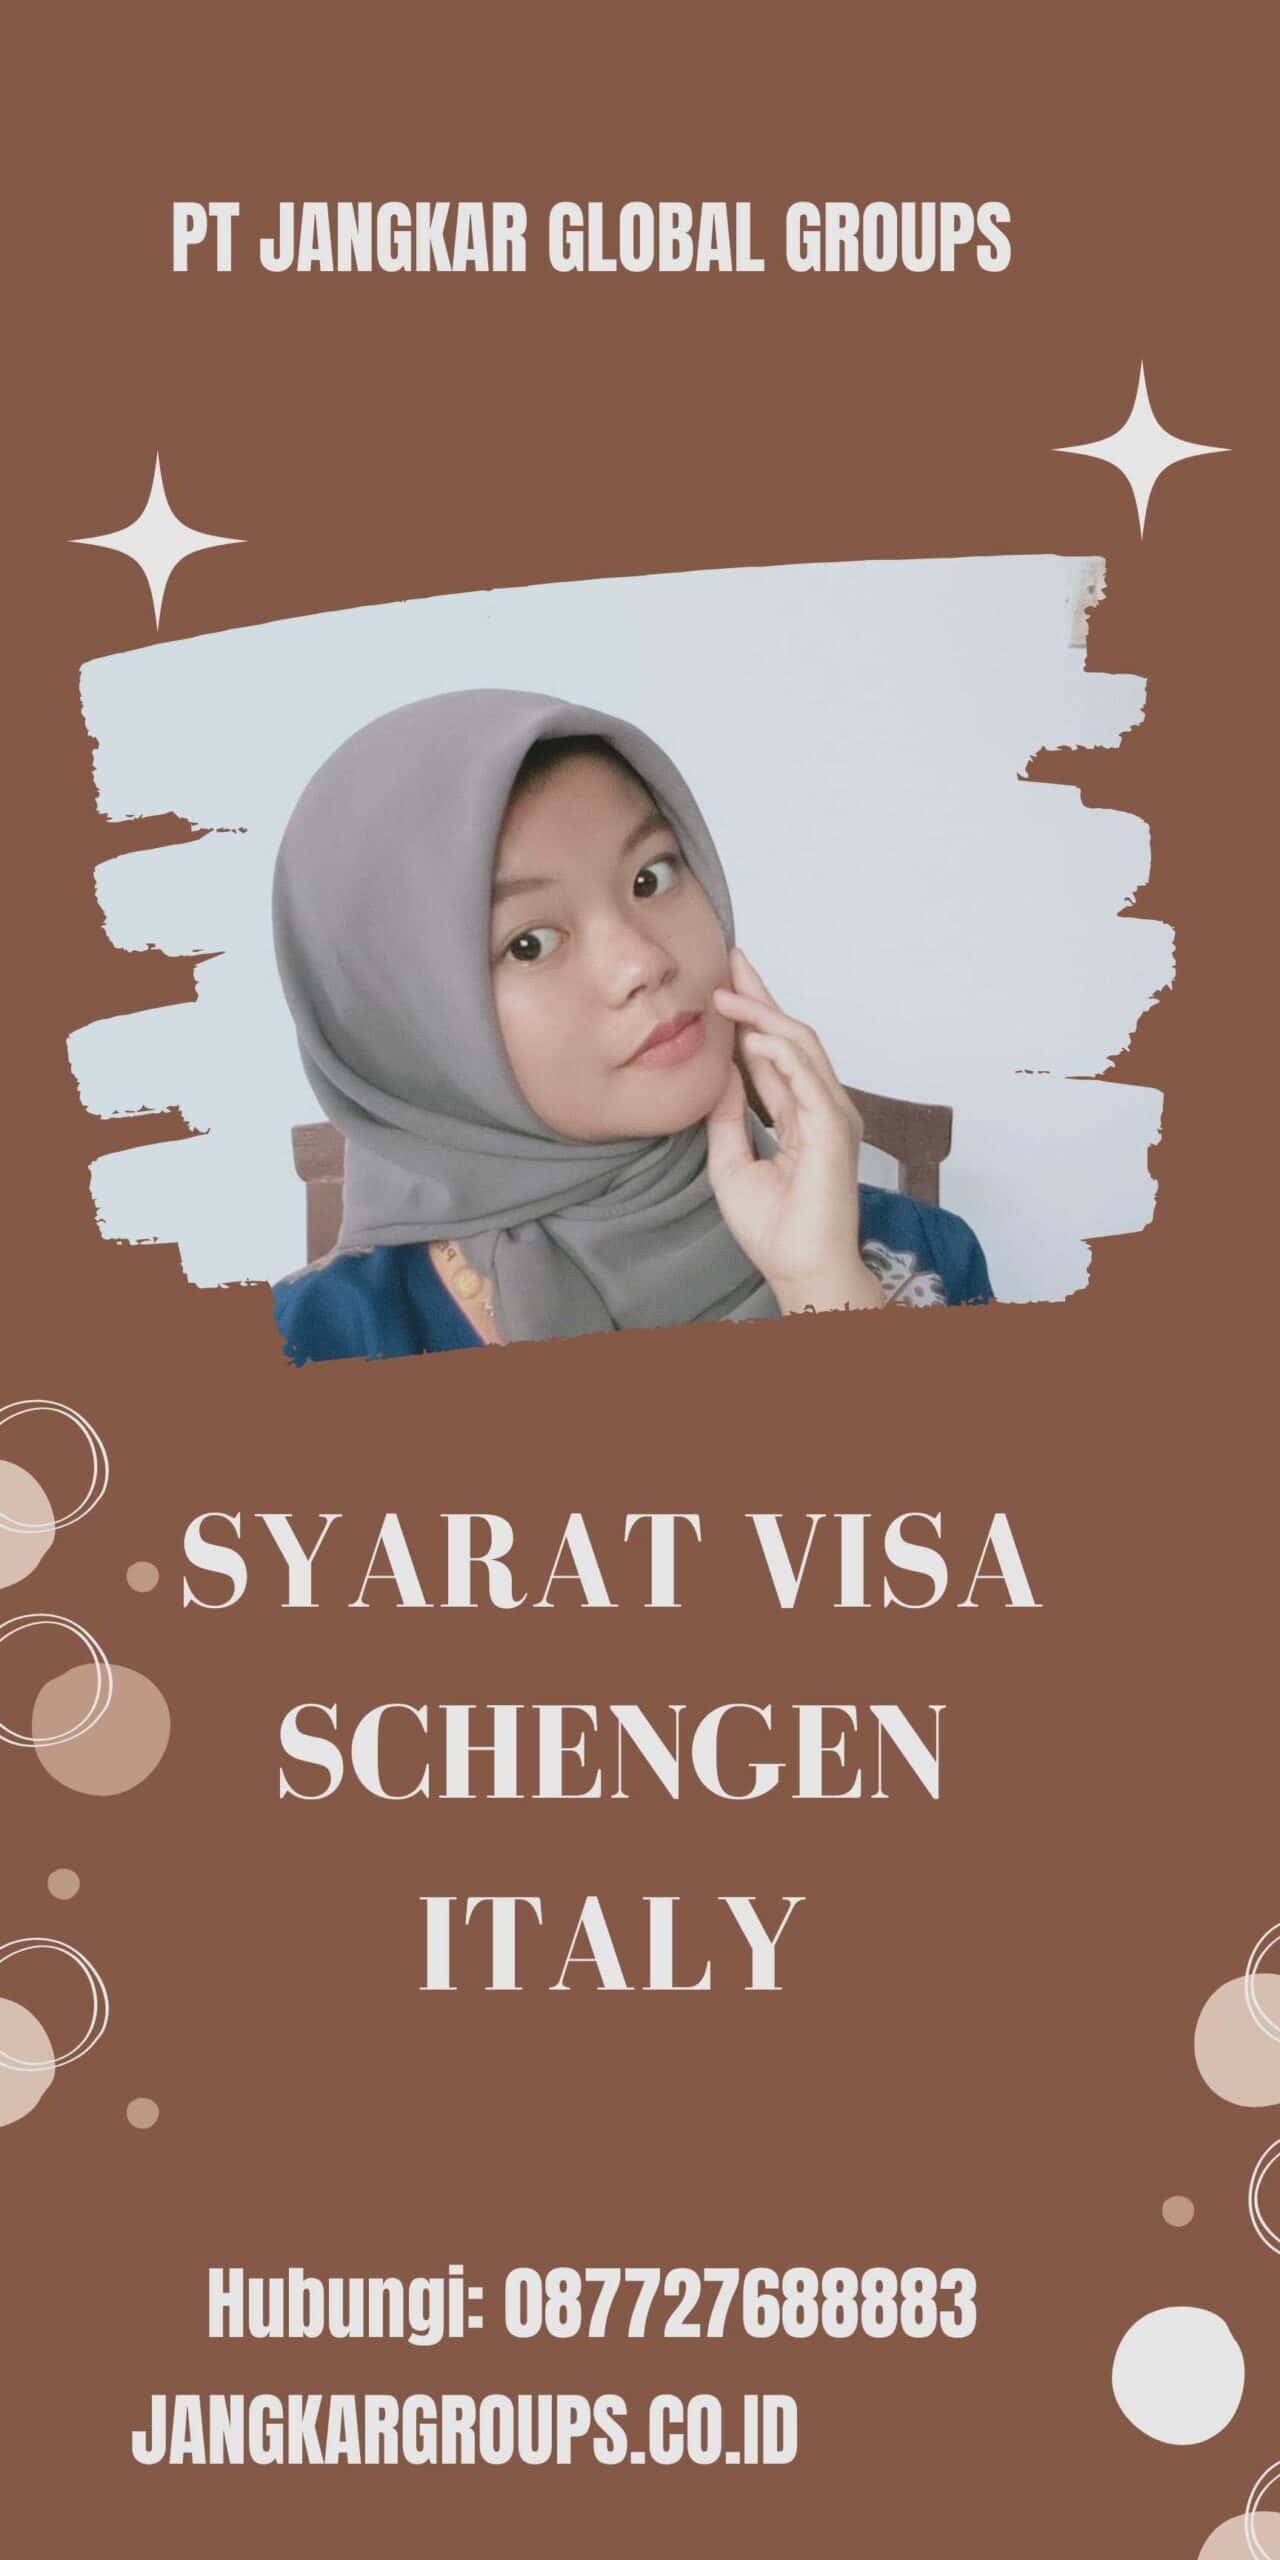 Syarat Visa Schengen Italy